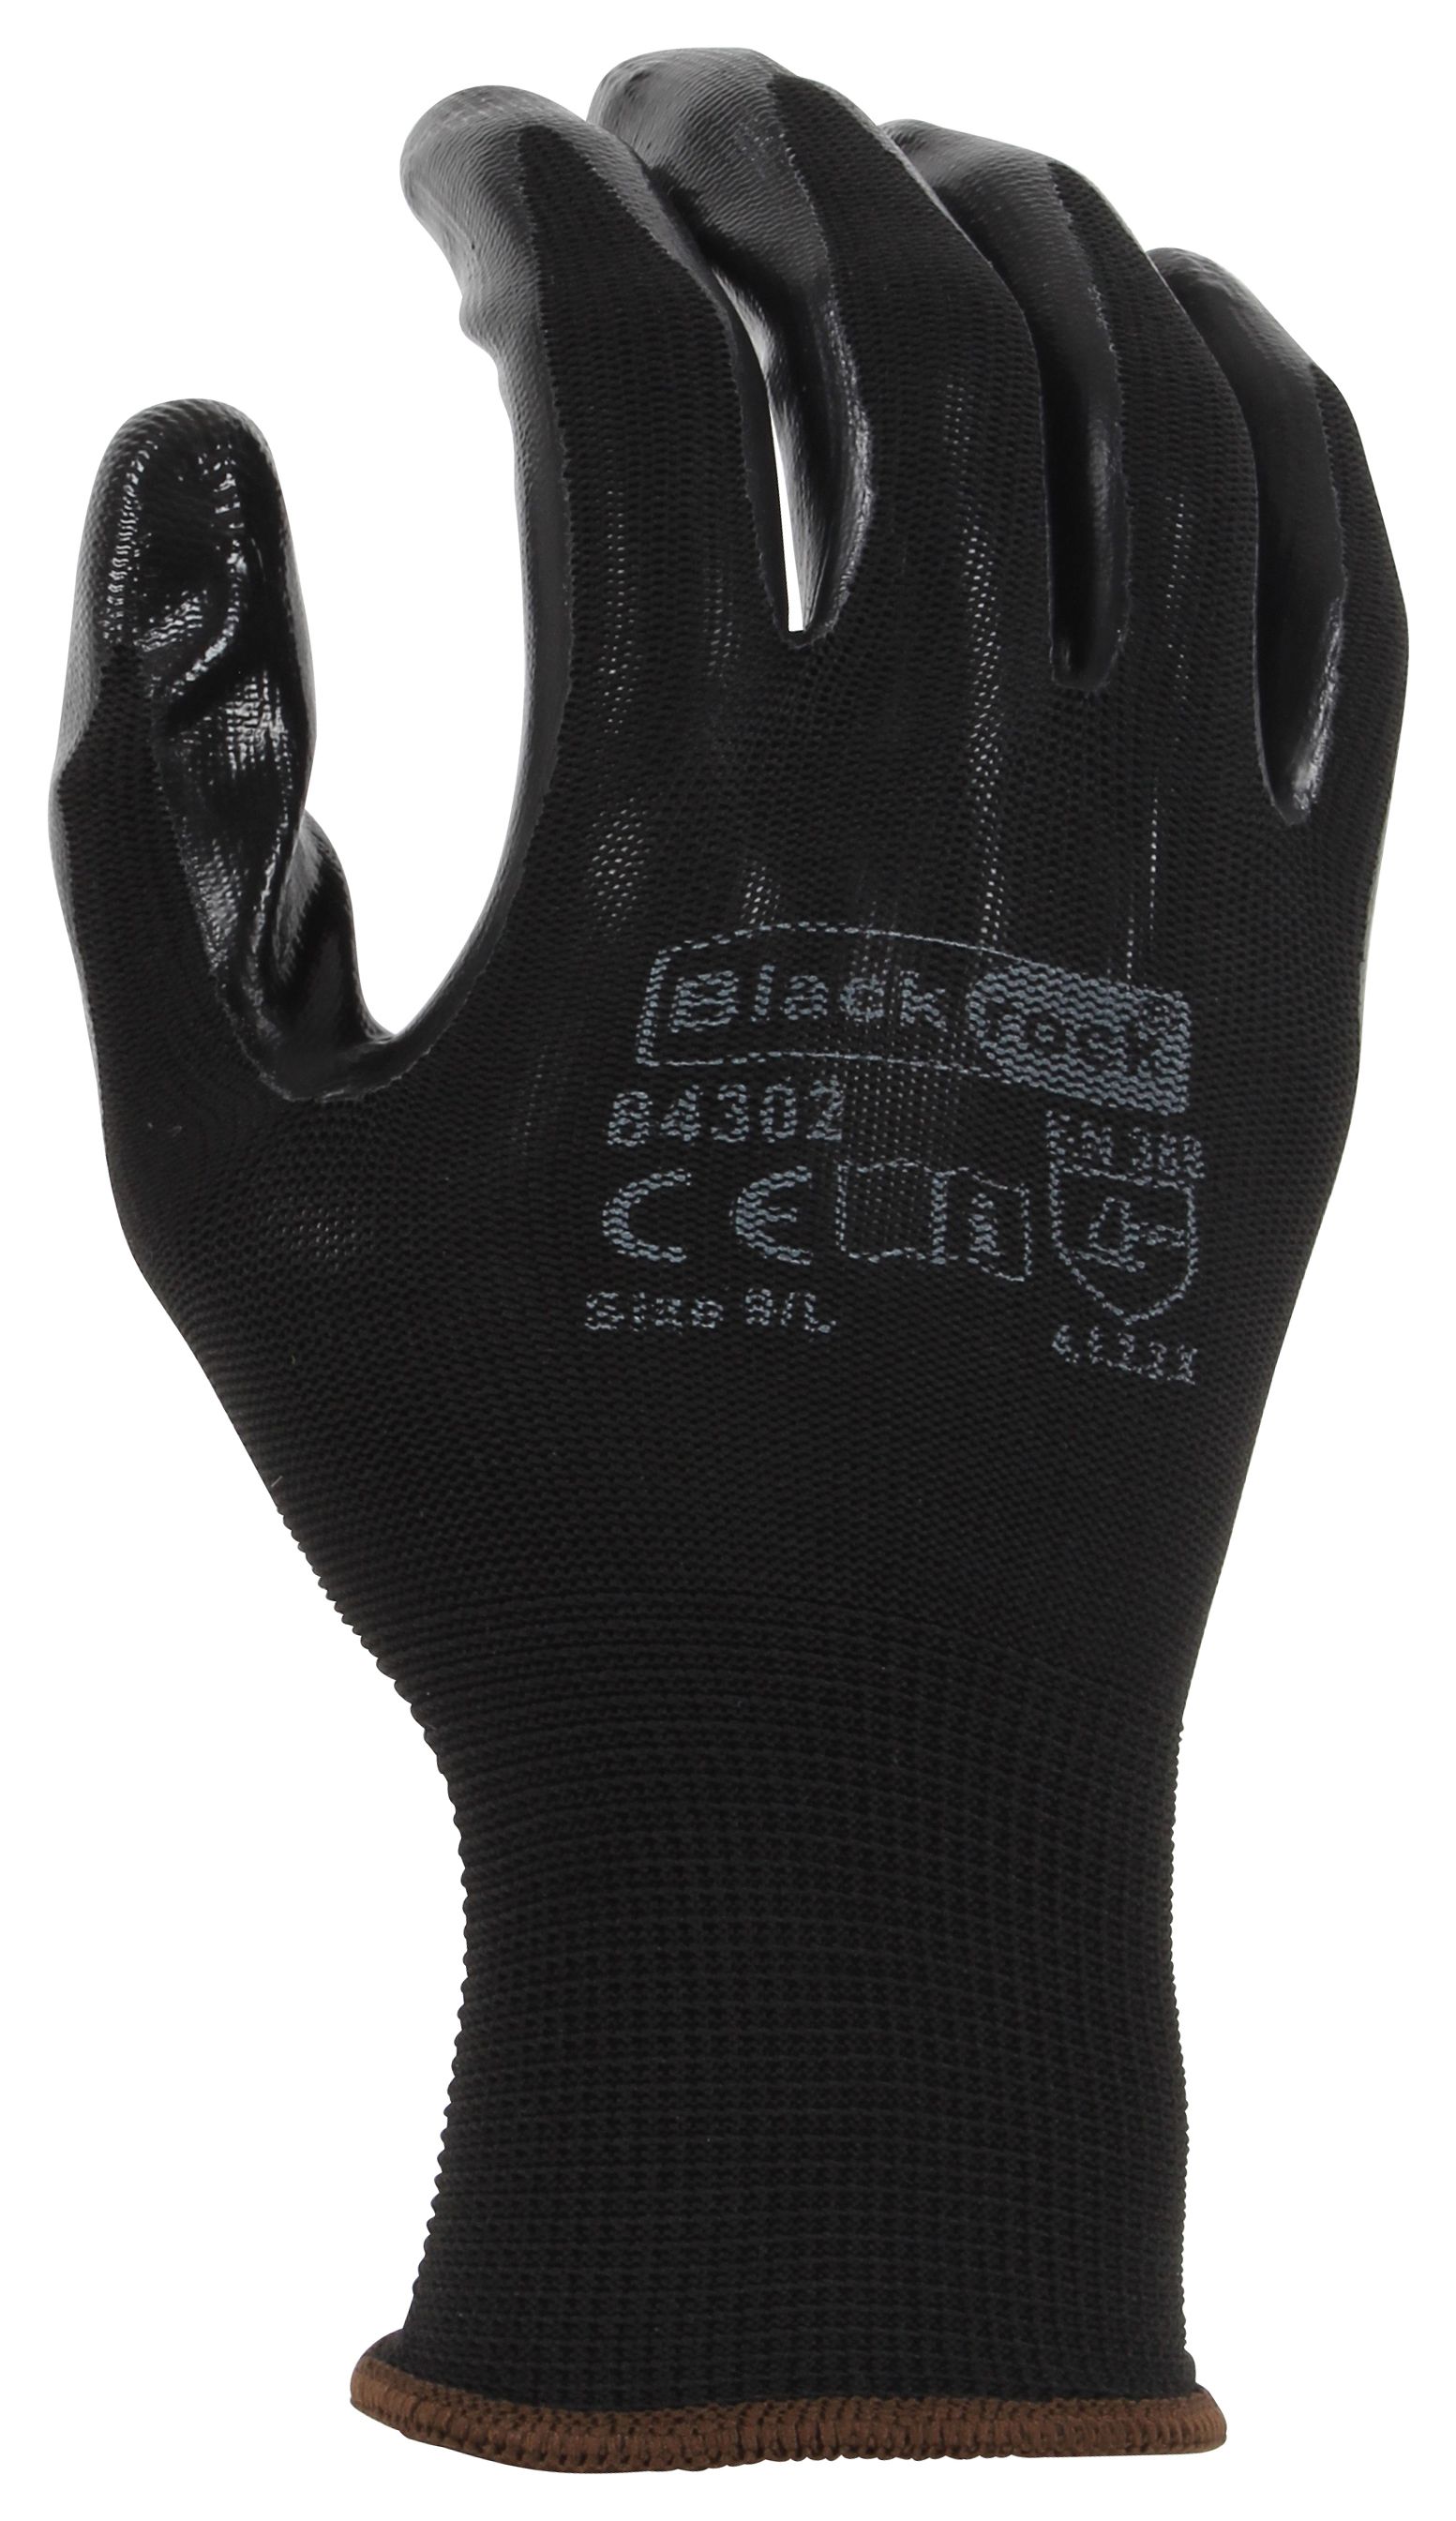 Image of Blackrock Super Grip Black Nitrile Gloves - Size XL/10